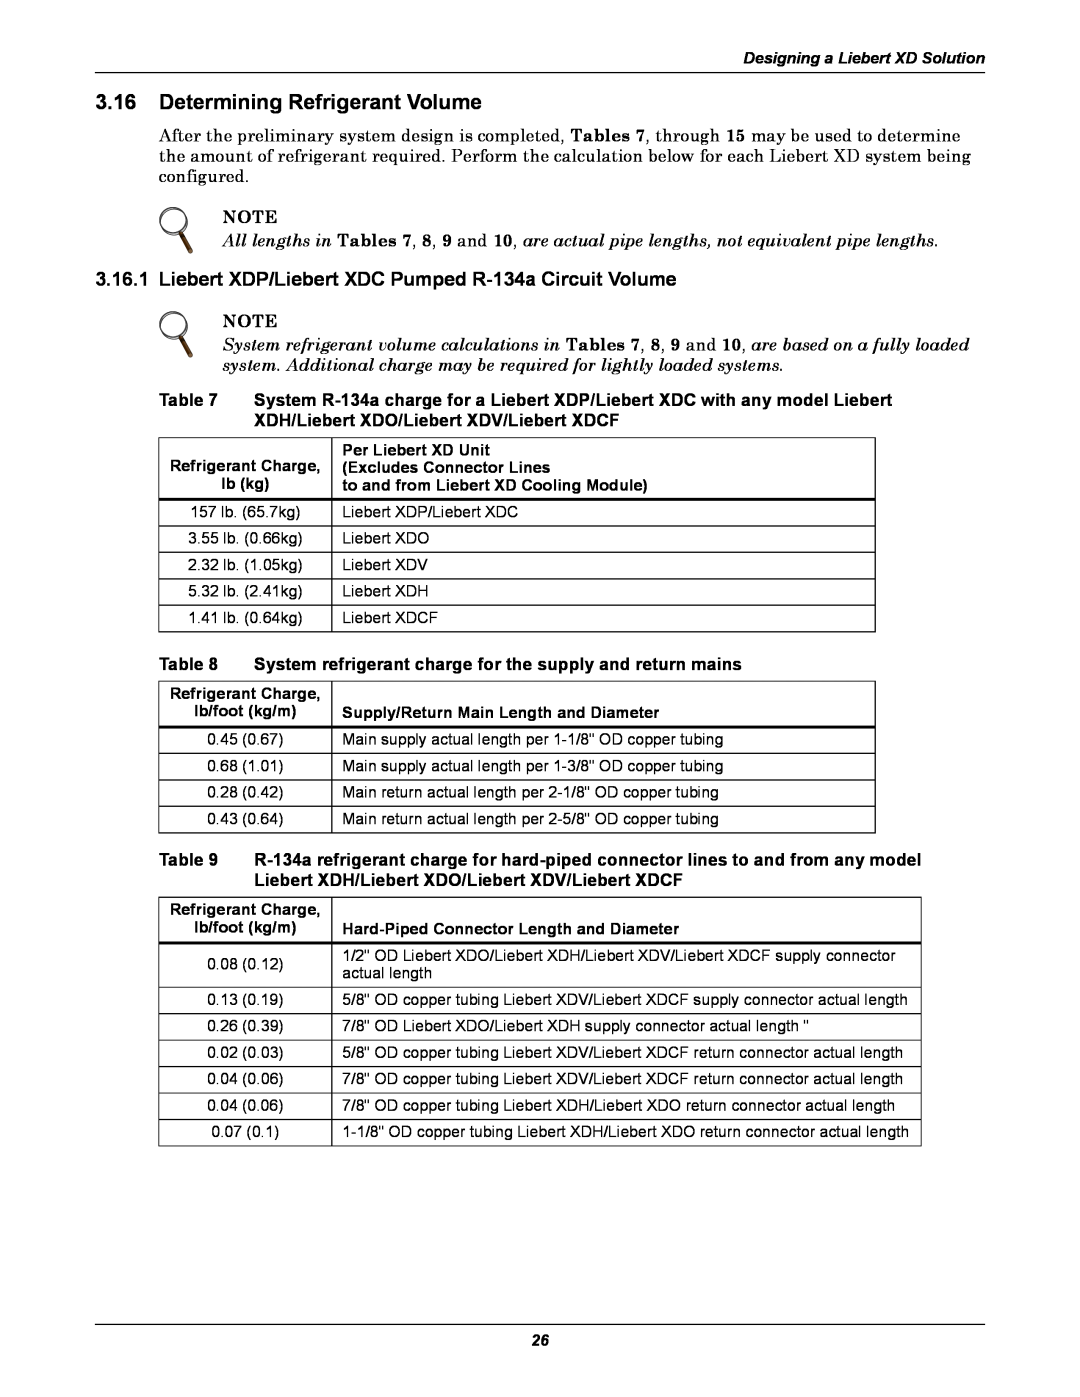 Emerson Xtreme Density manual Determining Refrigerant Volume, Liebert XDP/Liebert XDC Pumped R-134a Circuit Volume 